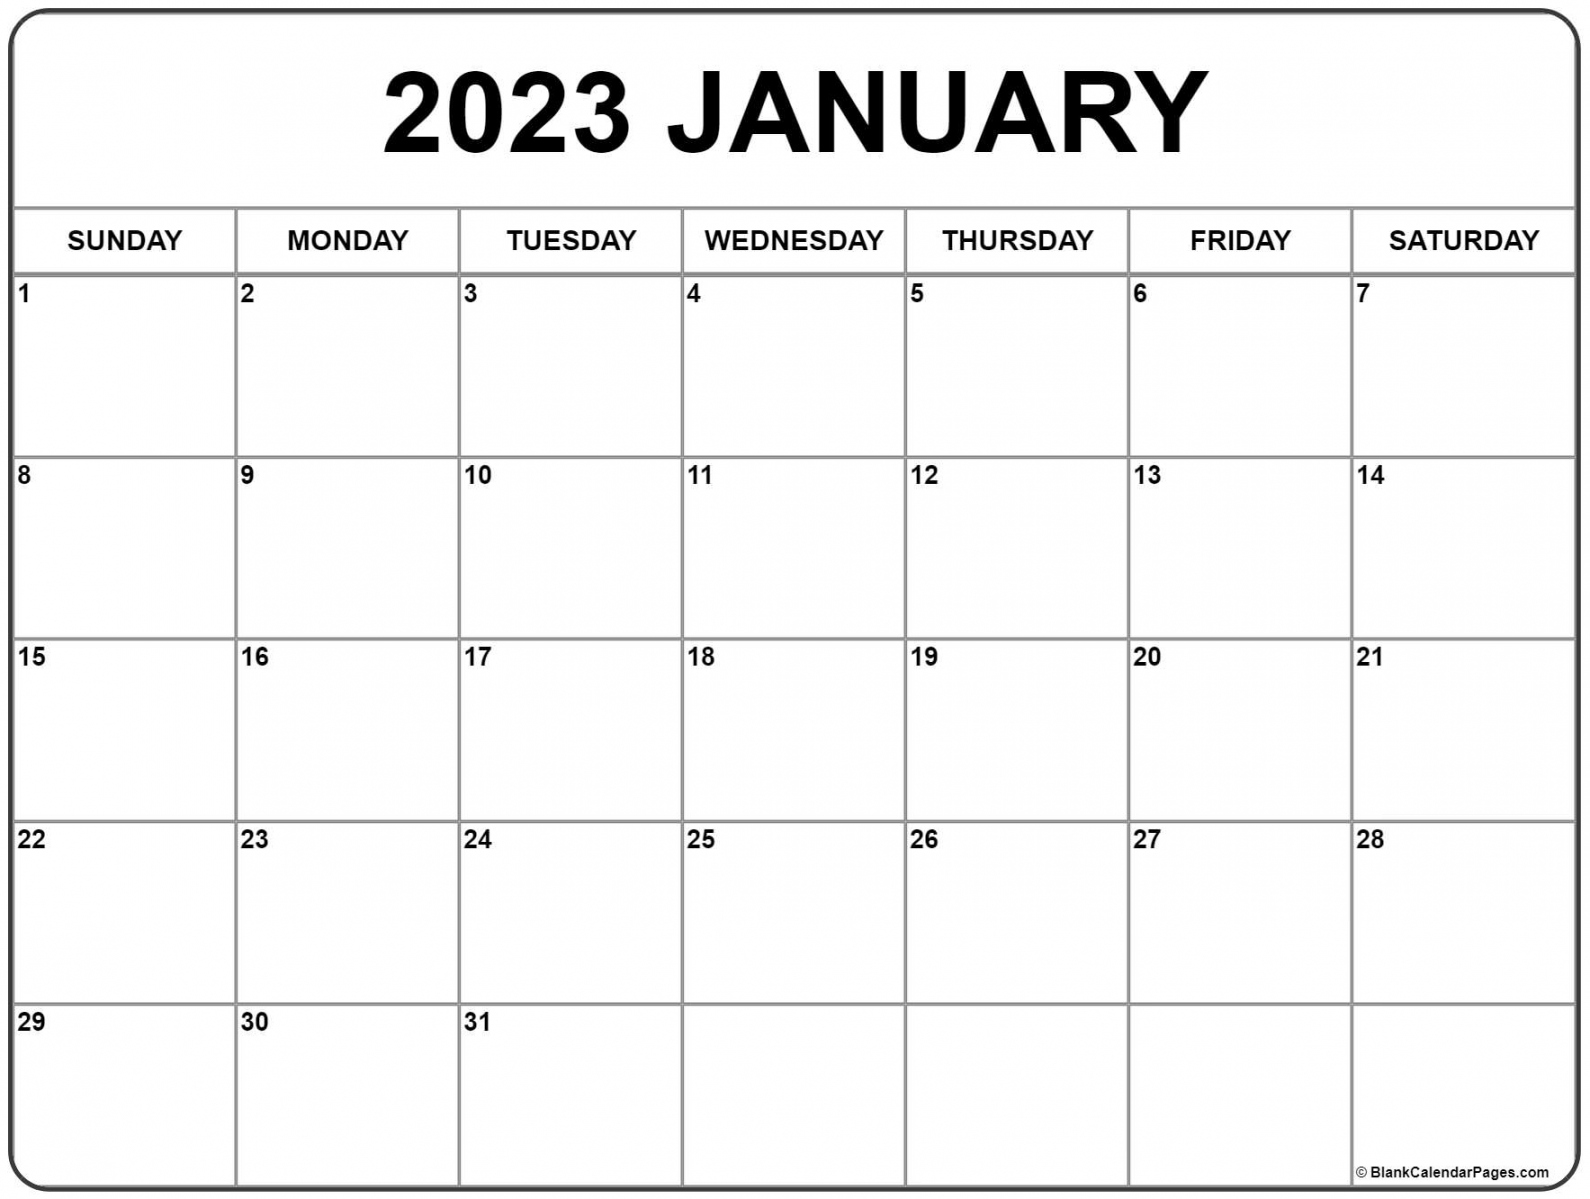 Calendar 2023 Free Printable - Printable - January  calendar  free printable calendar